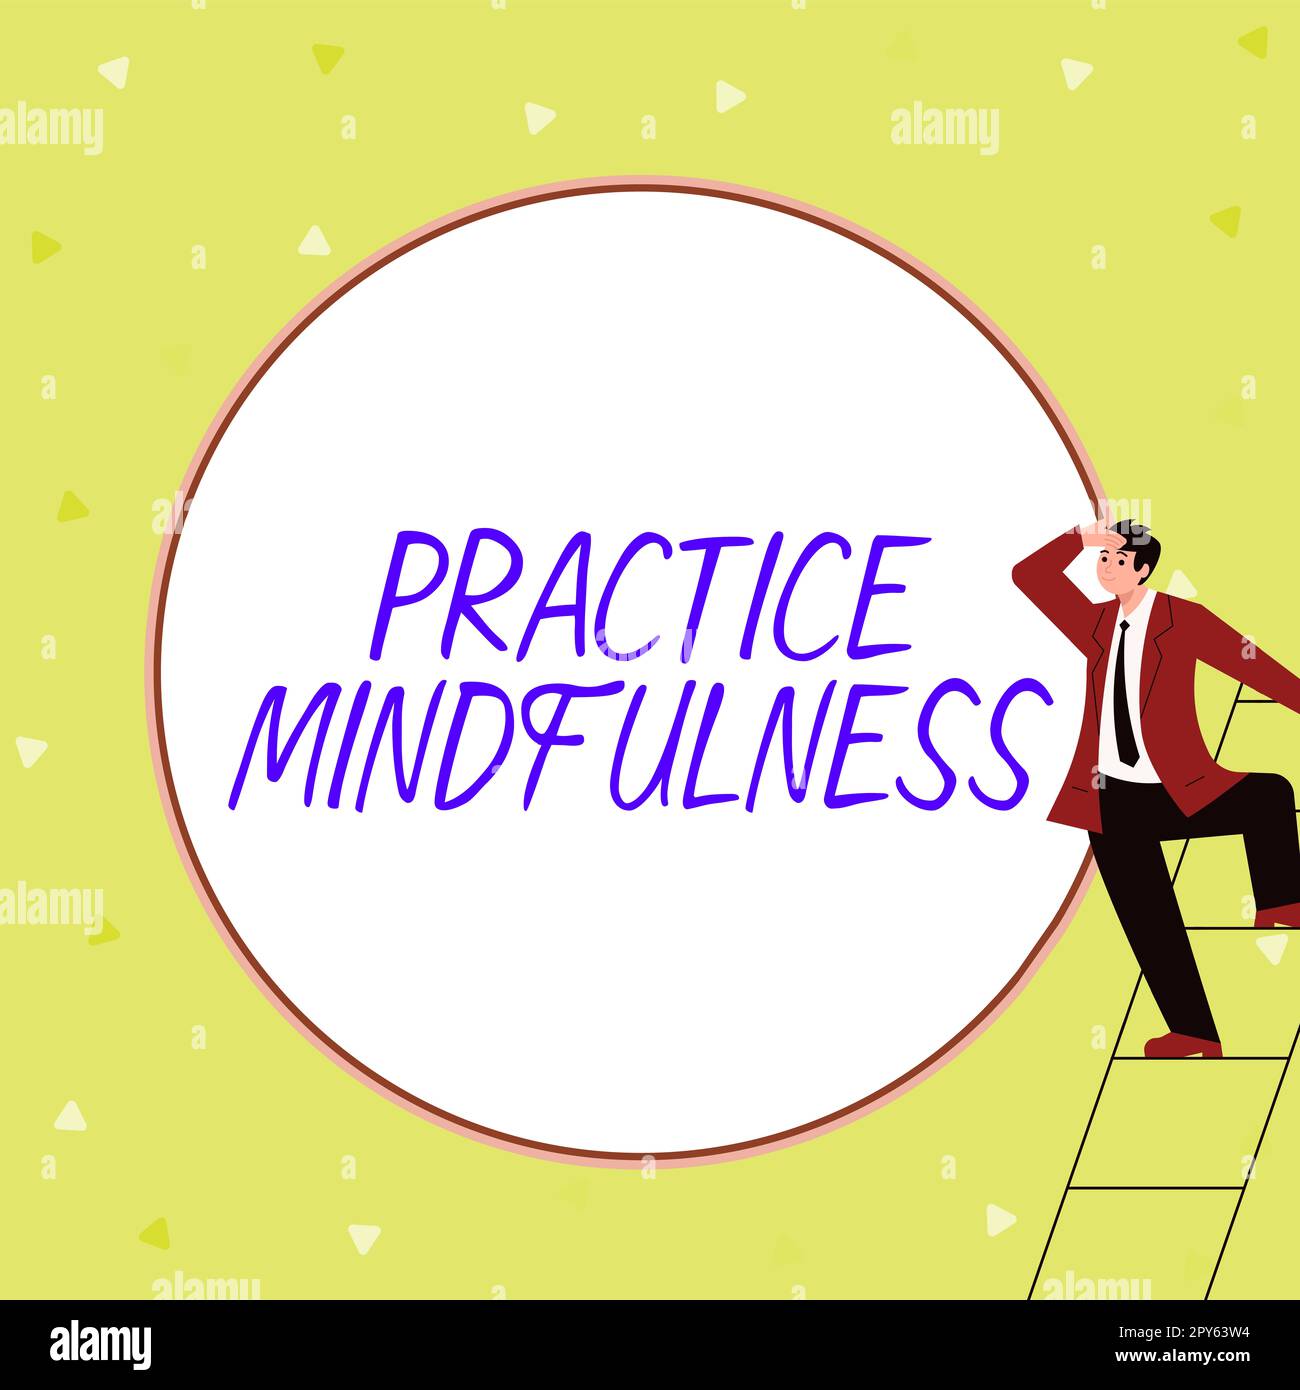 Affiche textuelle indiquant la Mindfulness de la pratique. Mot écrit sur atteindre un état de relaxation une forme de méditation Banque D'Images